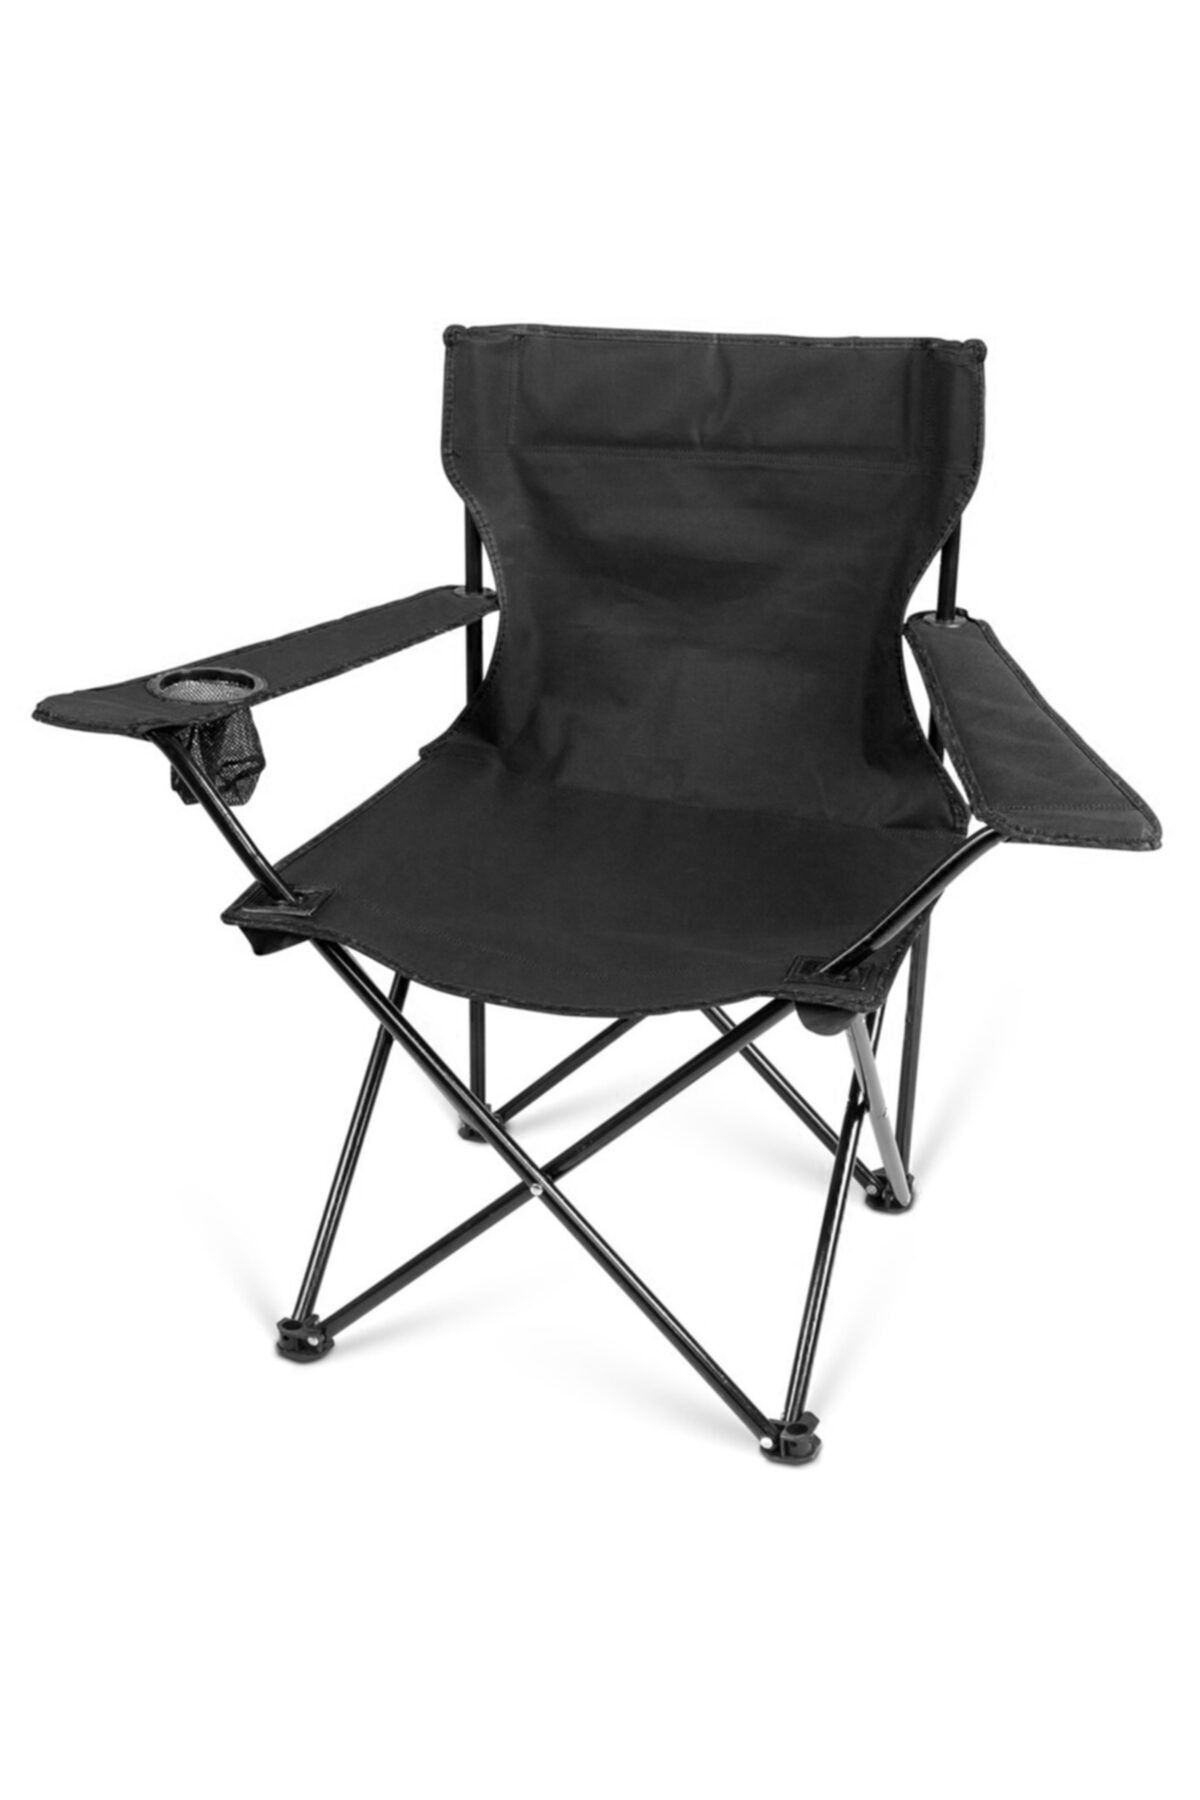 Bidesenal Kamp Sandalyesi Katlanır 50*50*80 Taşıma Çantalı 120 Kg Kapasiteli Ithal Ürün Siyah Renk